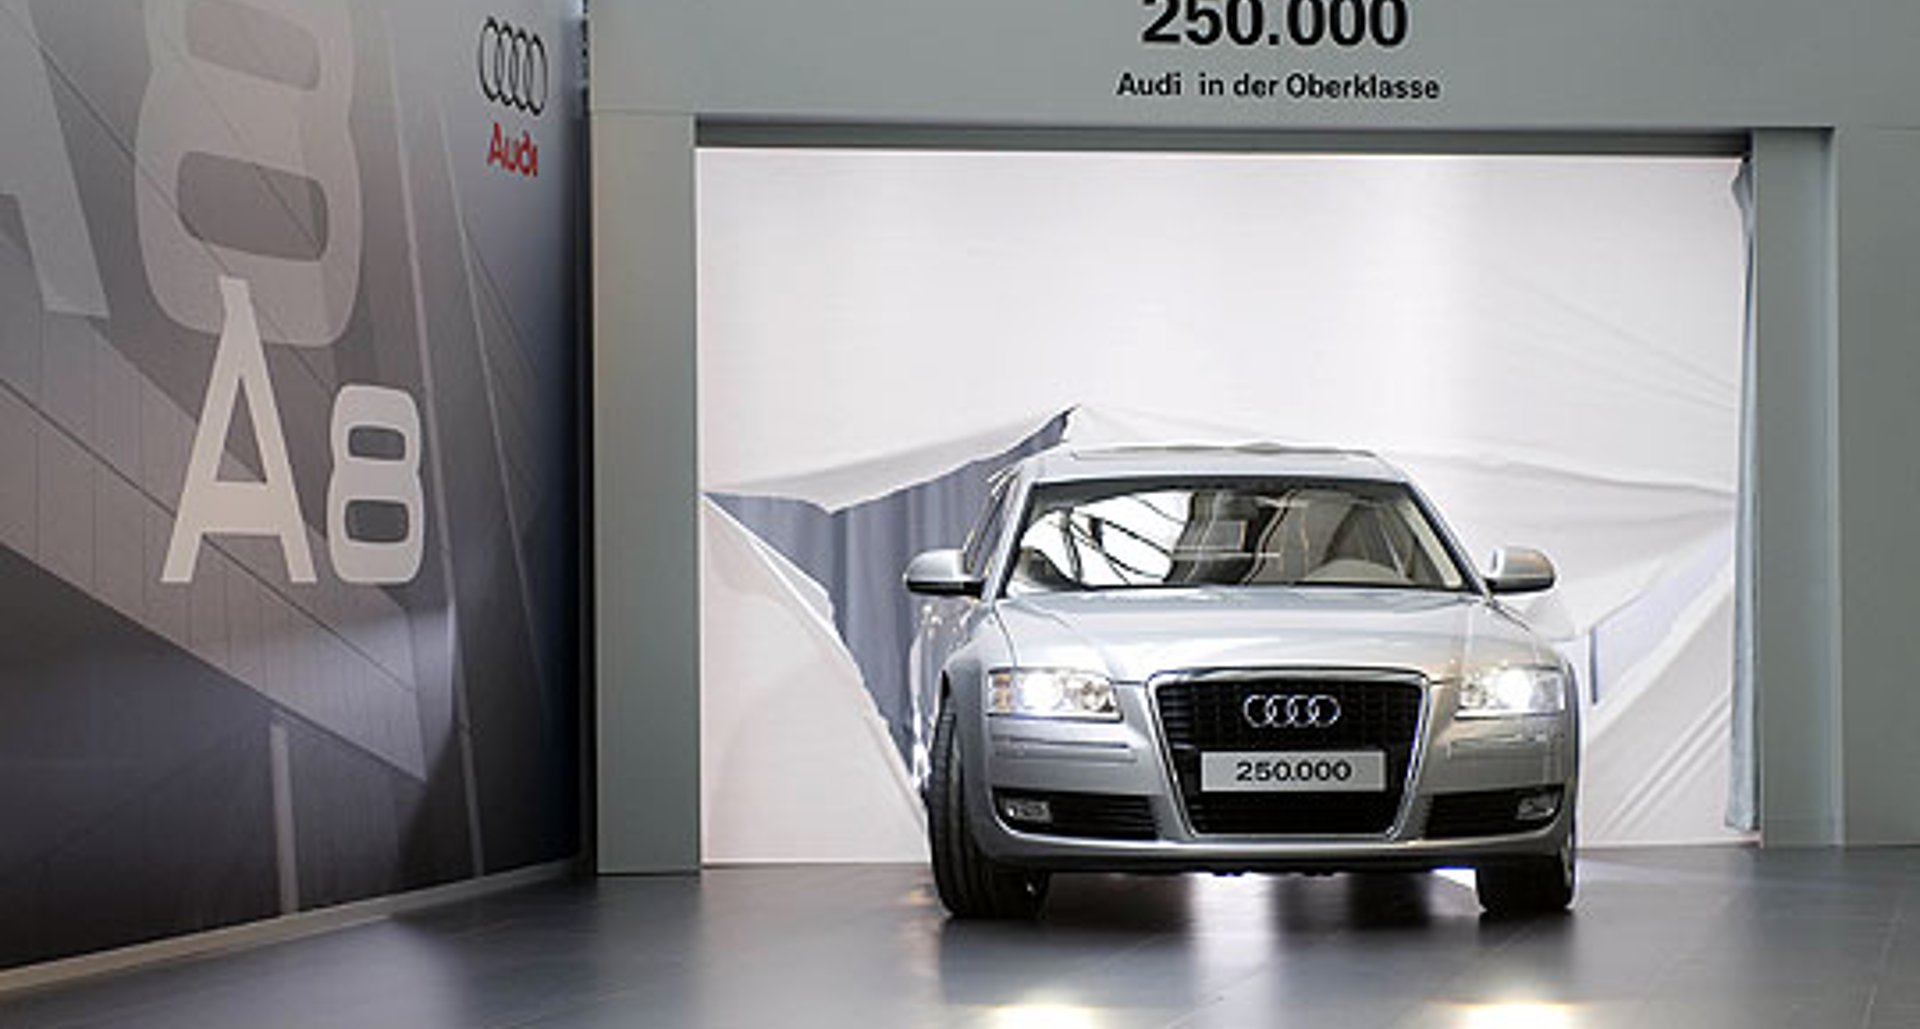 Audi feiert 250.000ste Oberklasse-Limousine